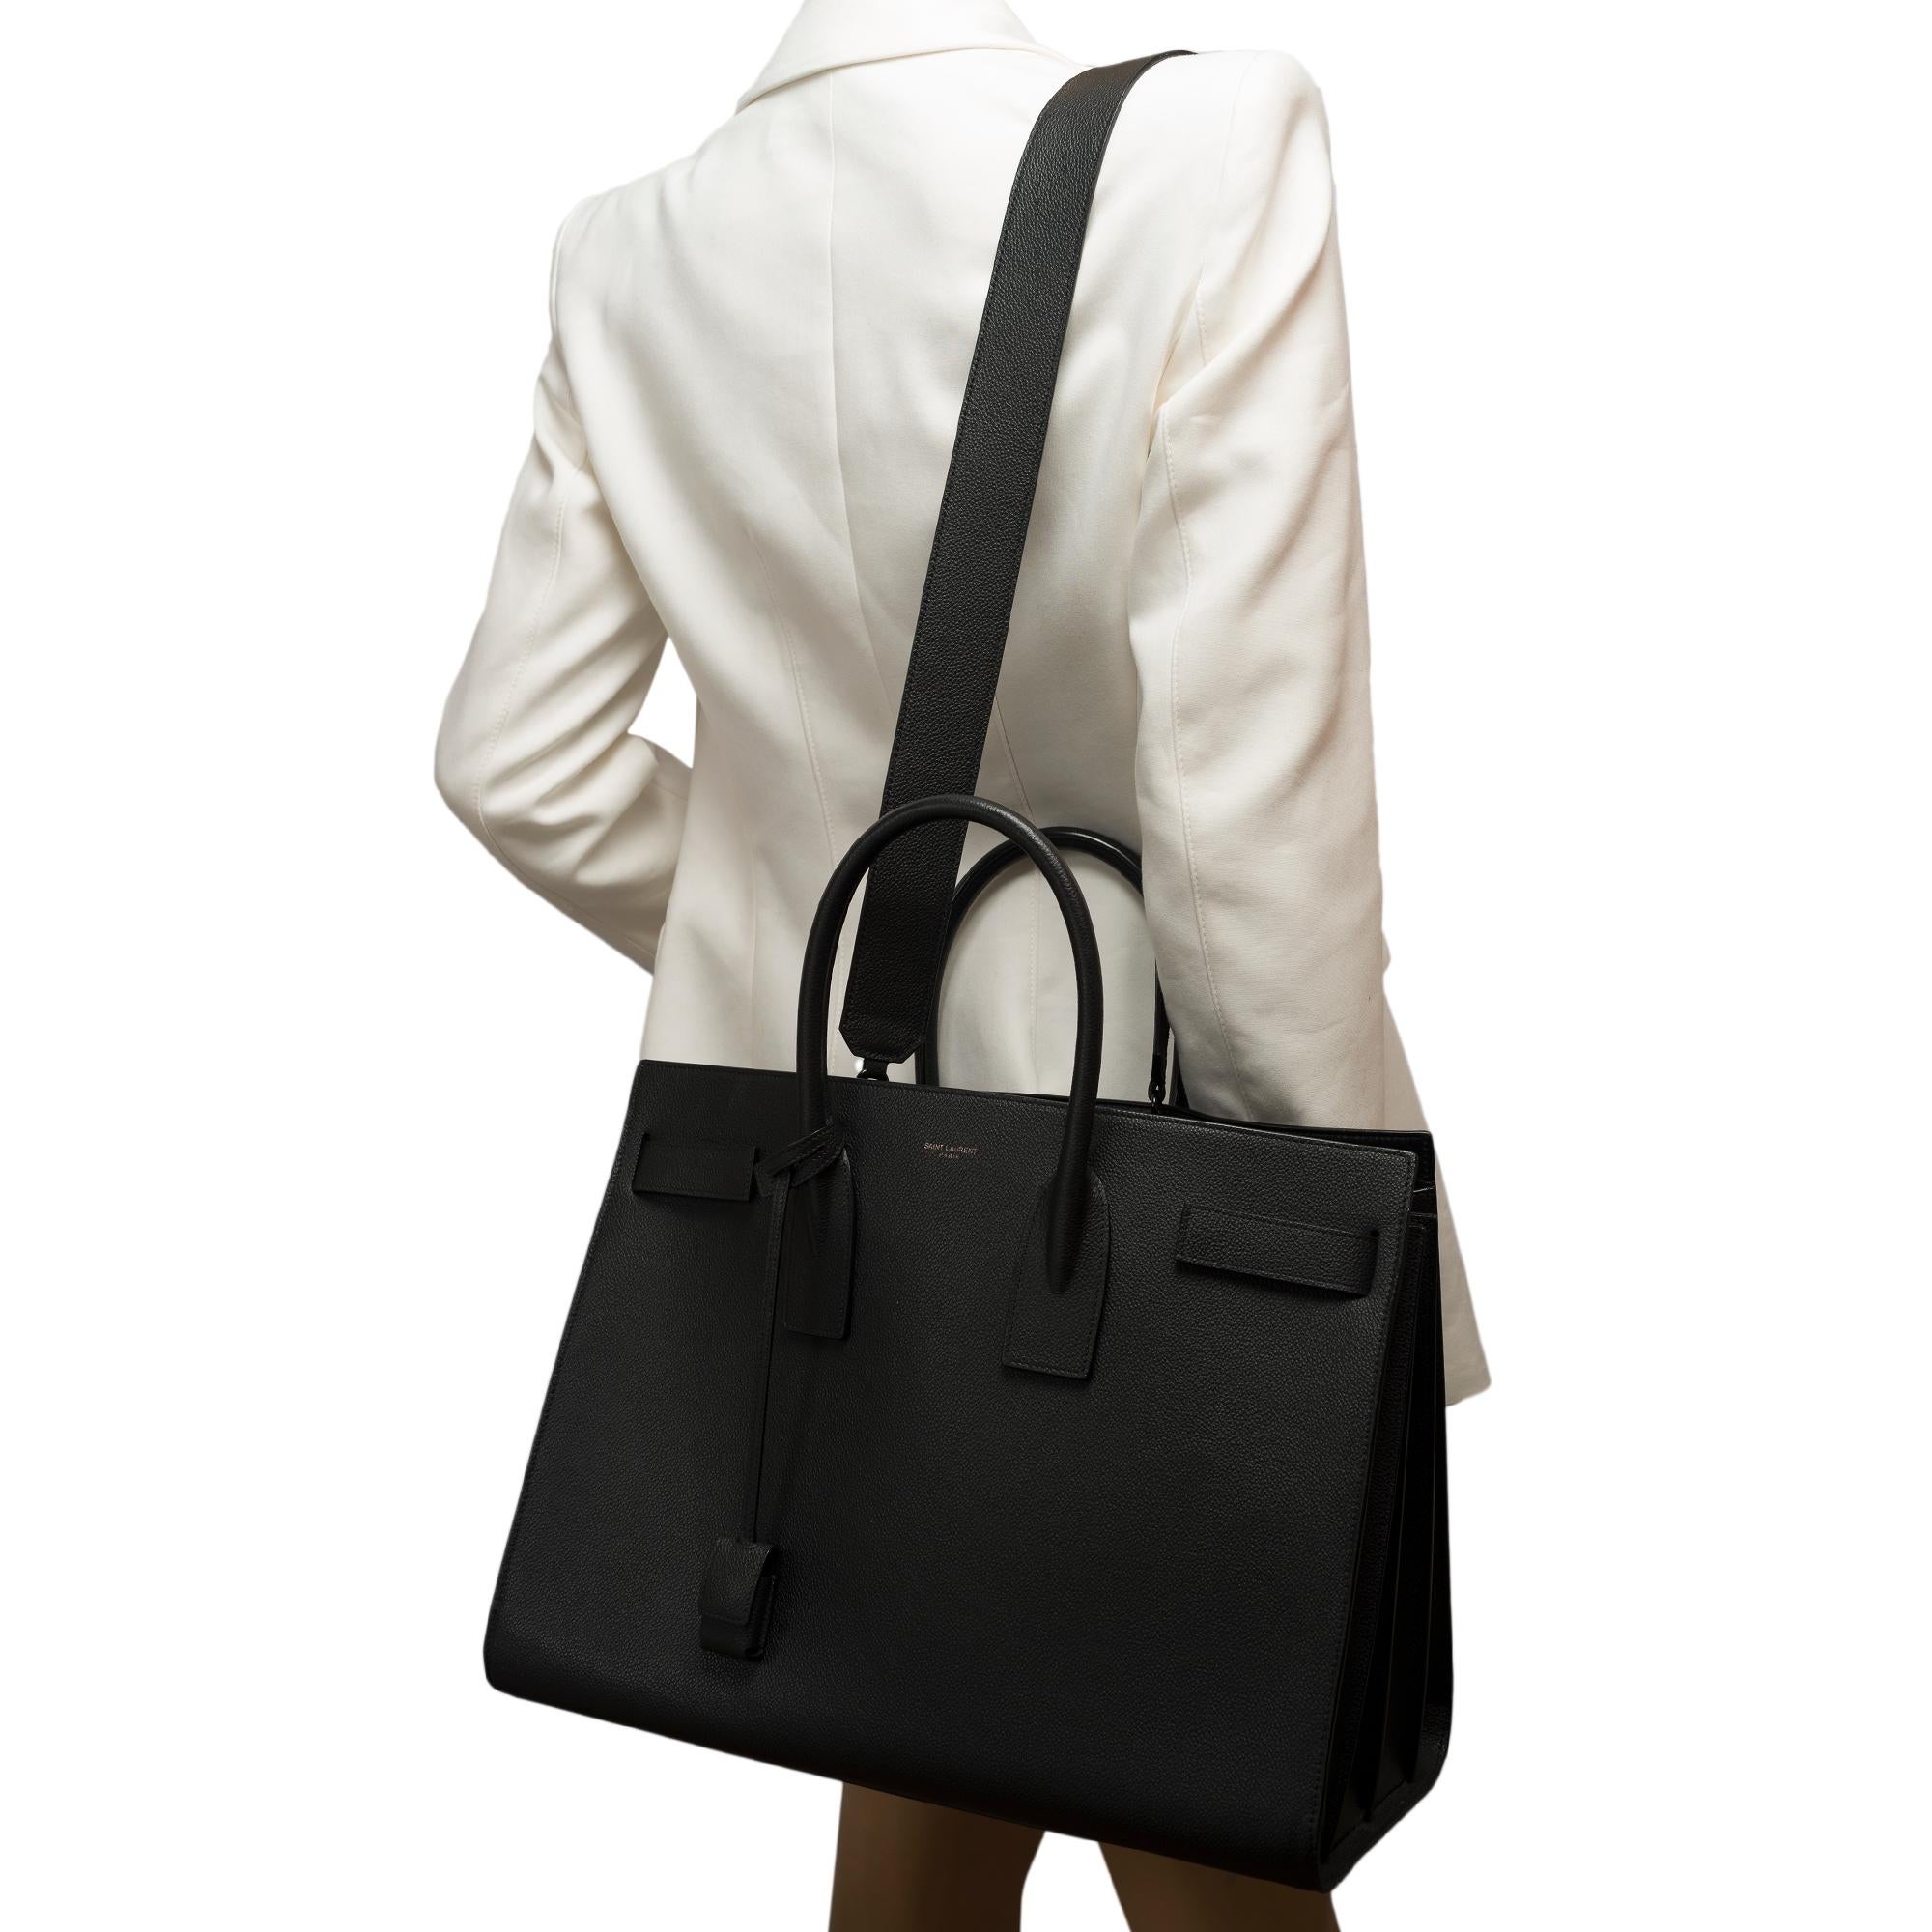 Saint Laurent Sac de Jour Large size handbag strap in black grained leather 8